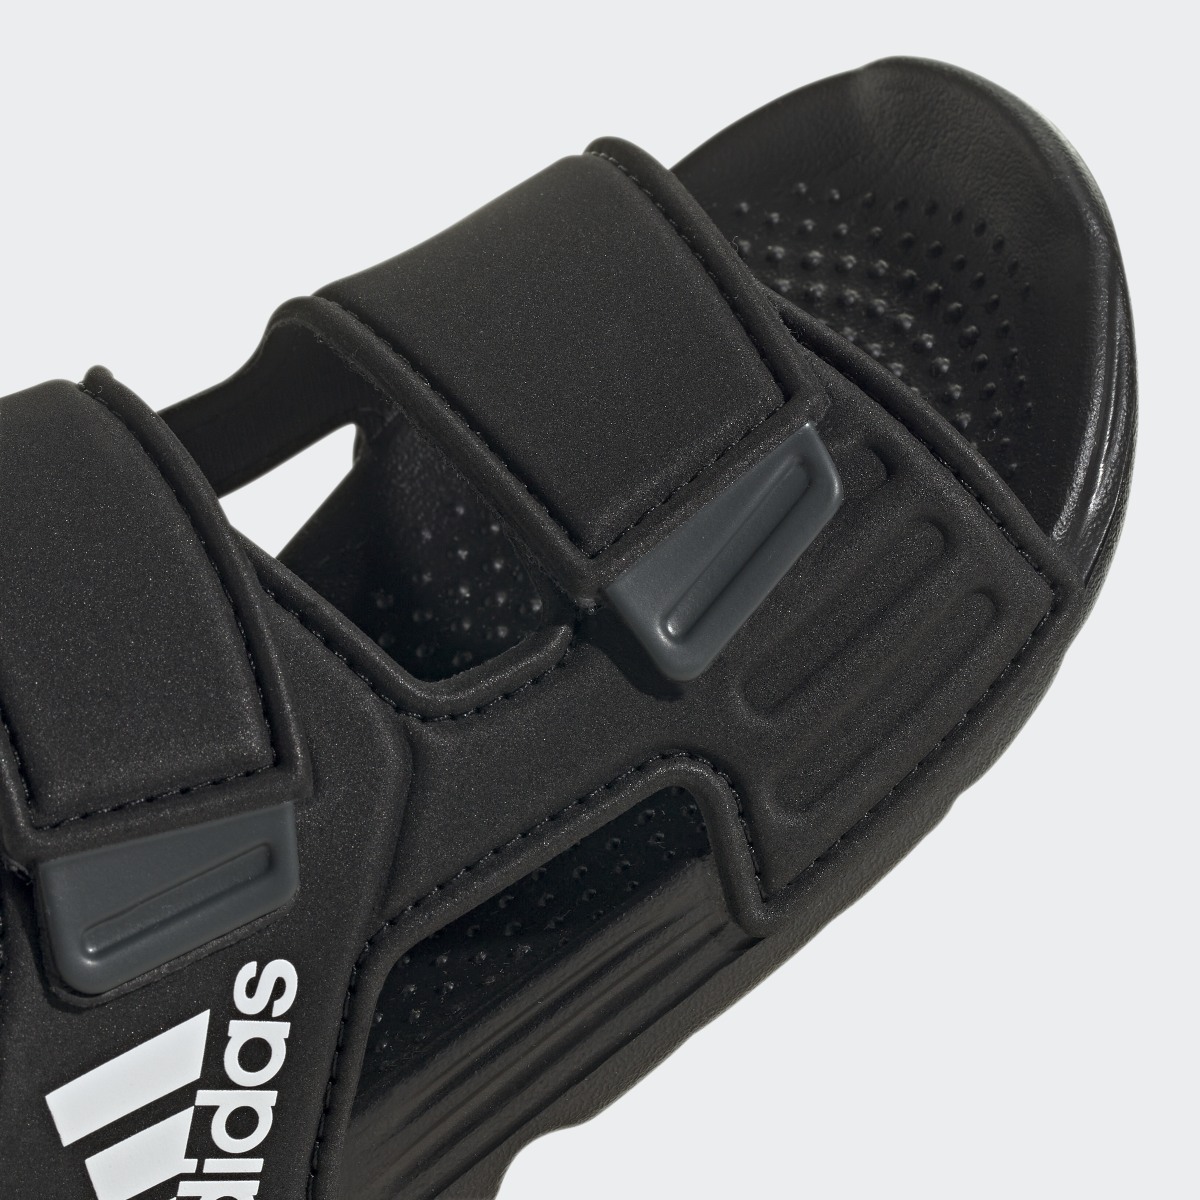 Adidas Altaswim Sandals. 9